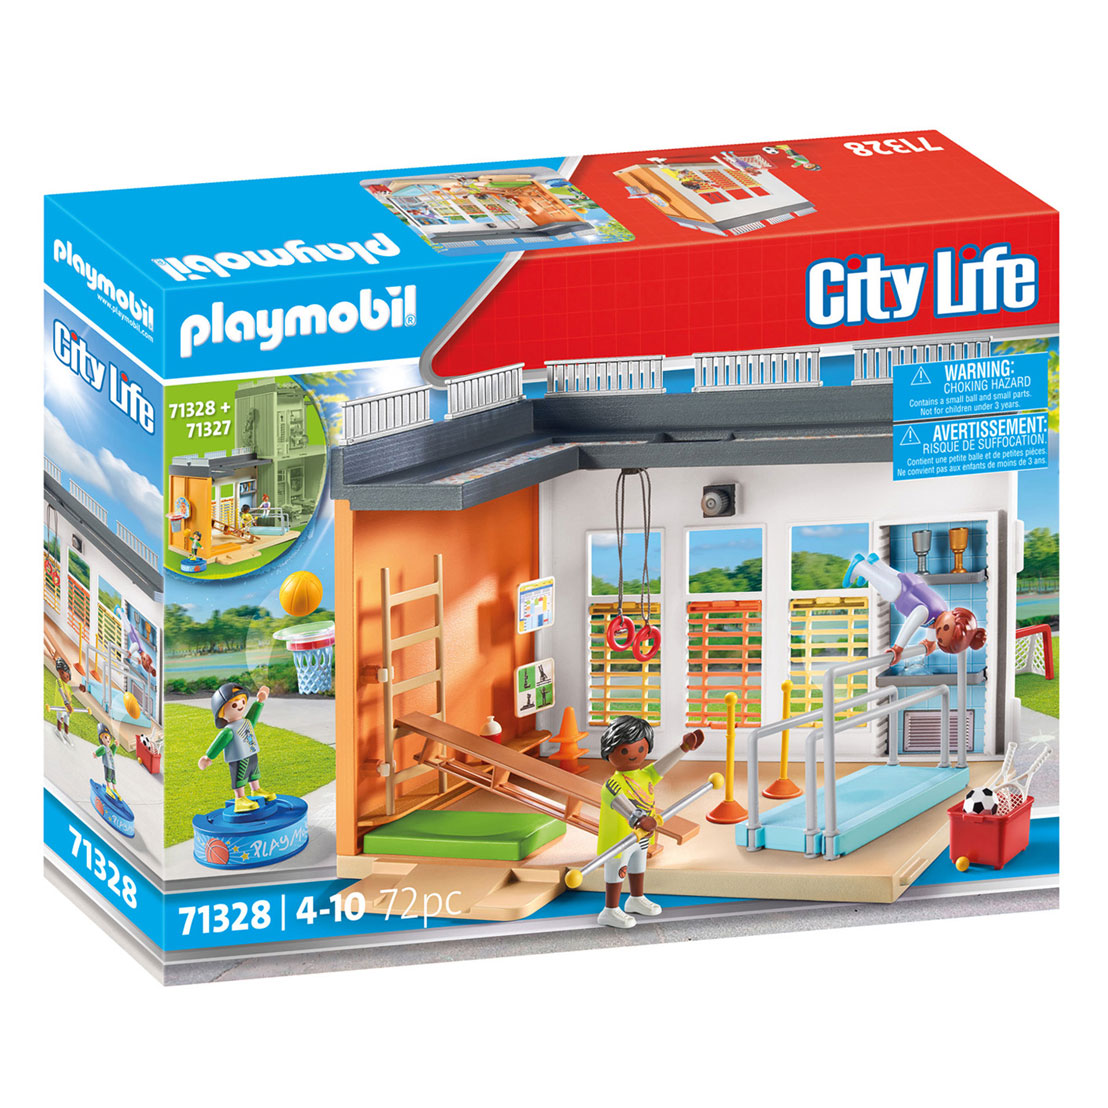 Acheter Playmobil City Life Salle de sport d'extension - 71328 en ligne?